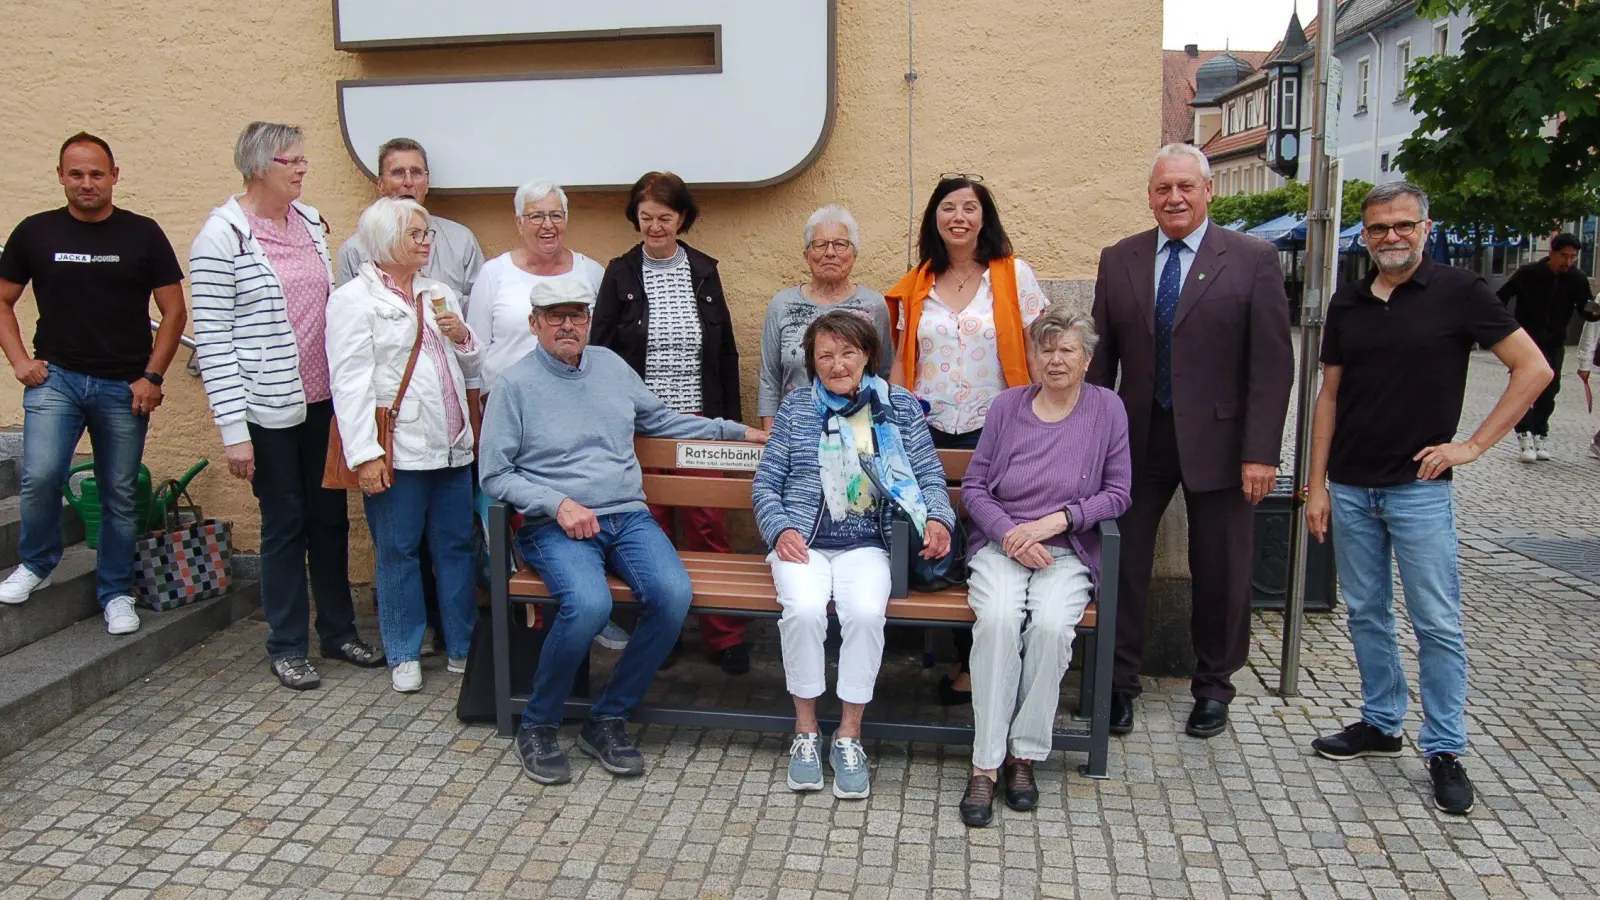 Die Senioren können sich freuen. In Neustadt gibt es seit Kurzem drei „Ratsch-Bänkchen“ in der Innenstadt. Ein Sitzmöbel steht direkt am Marktplatz. Stadtvertreter und Mitglieder des Seniorenbeirats kamen zur Einweihung und freuten sich. (Foto: Christa Frühwald)